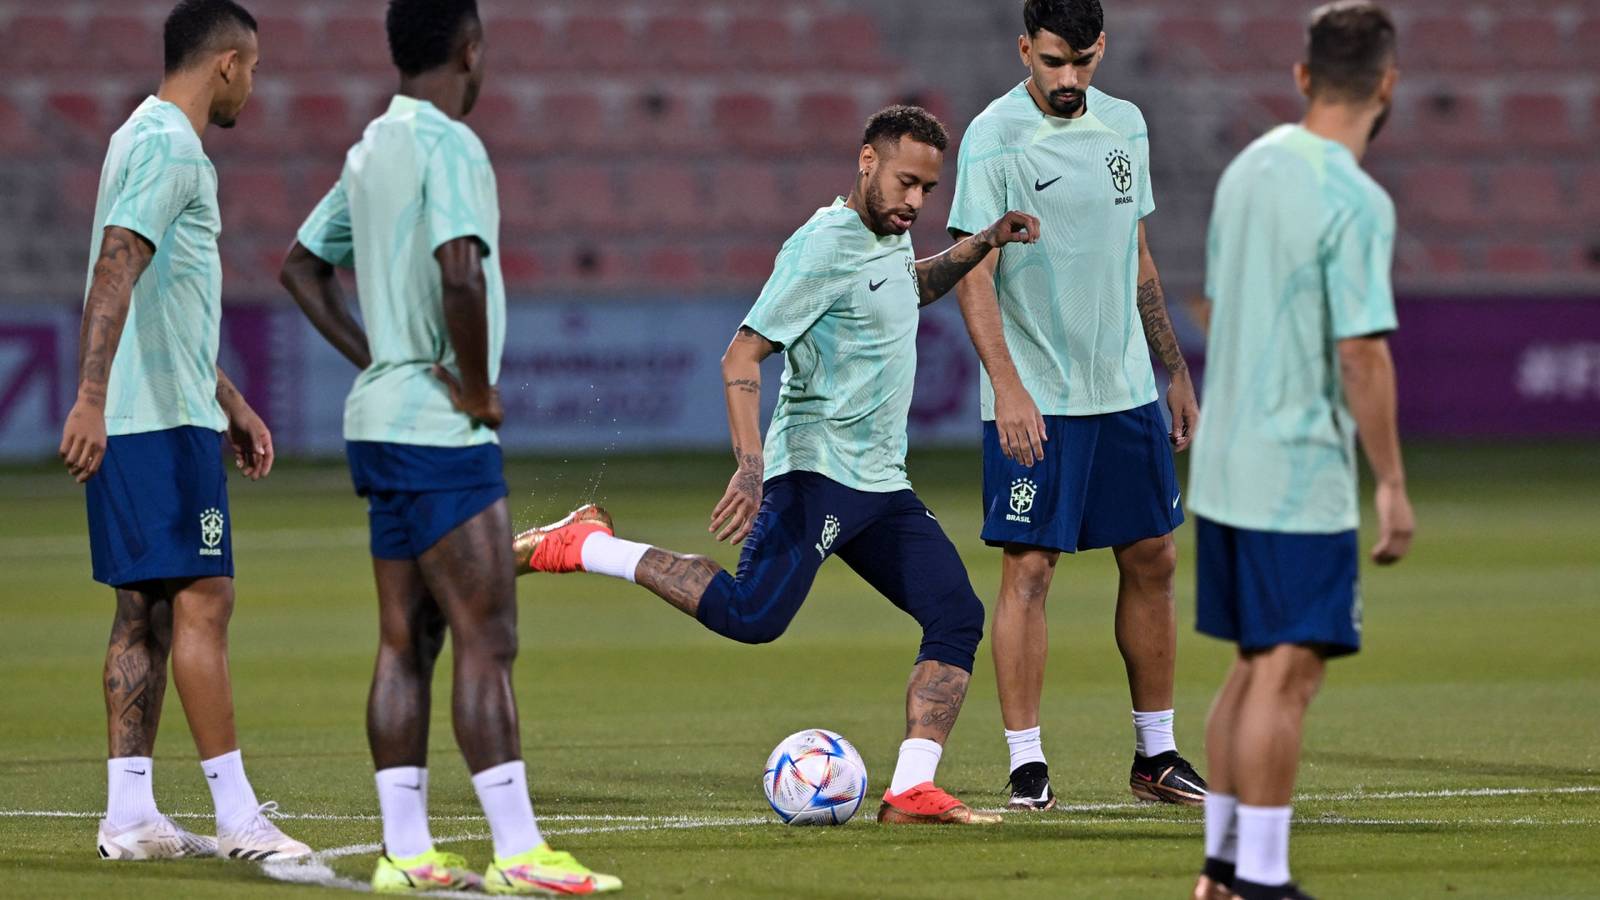 Seleção brasileira pode estar com ‘surto de covid’ entre jogadores; Neymar teve febre